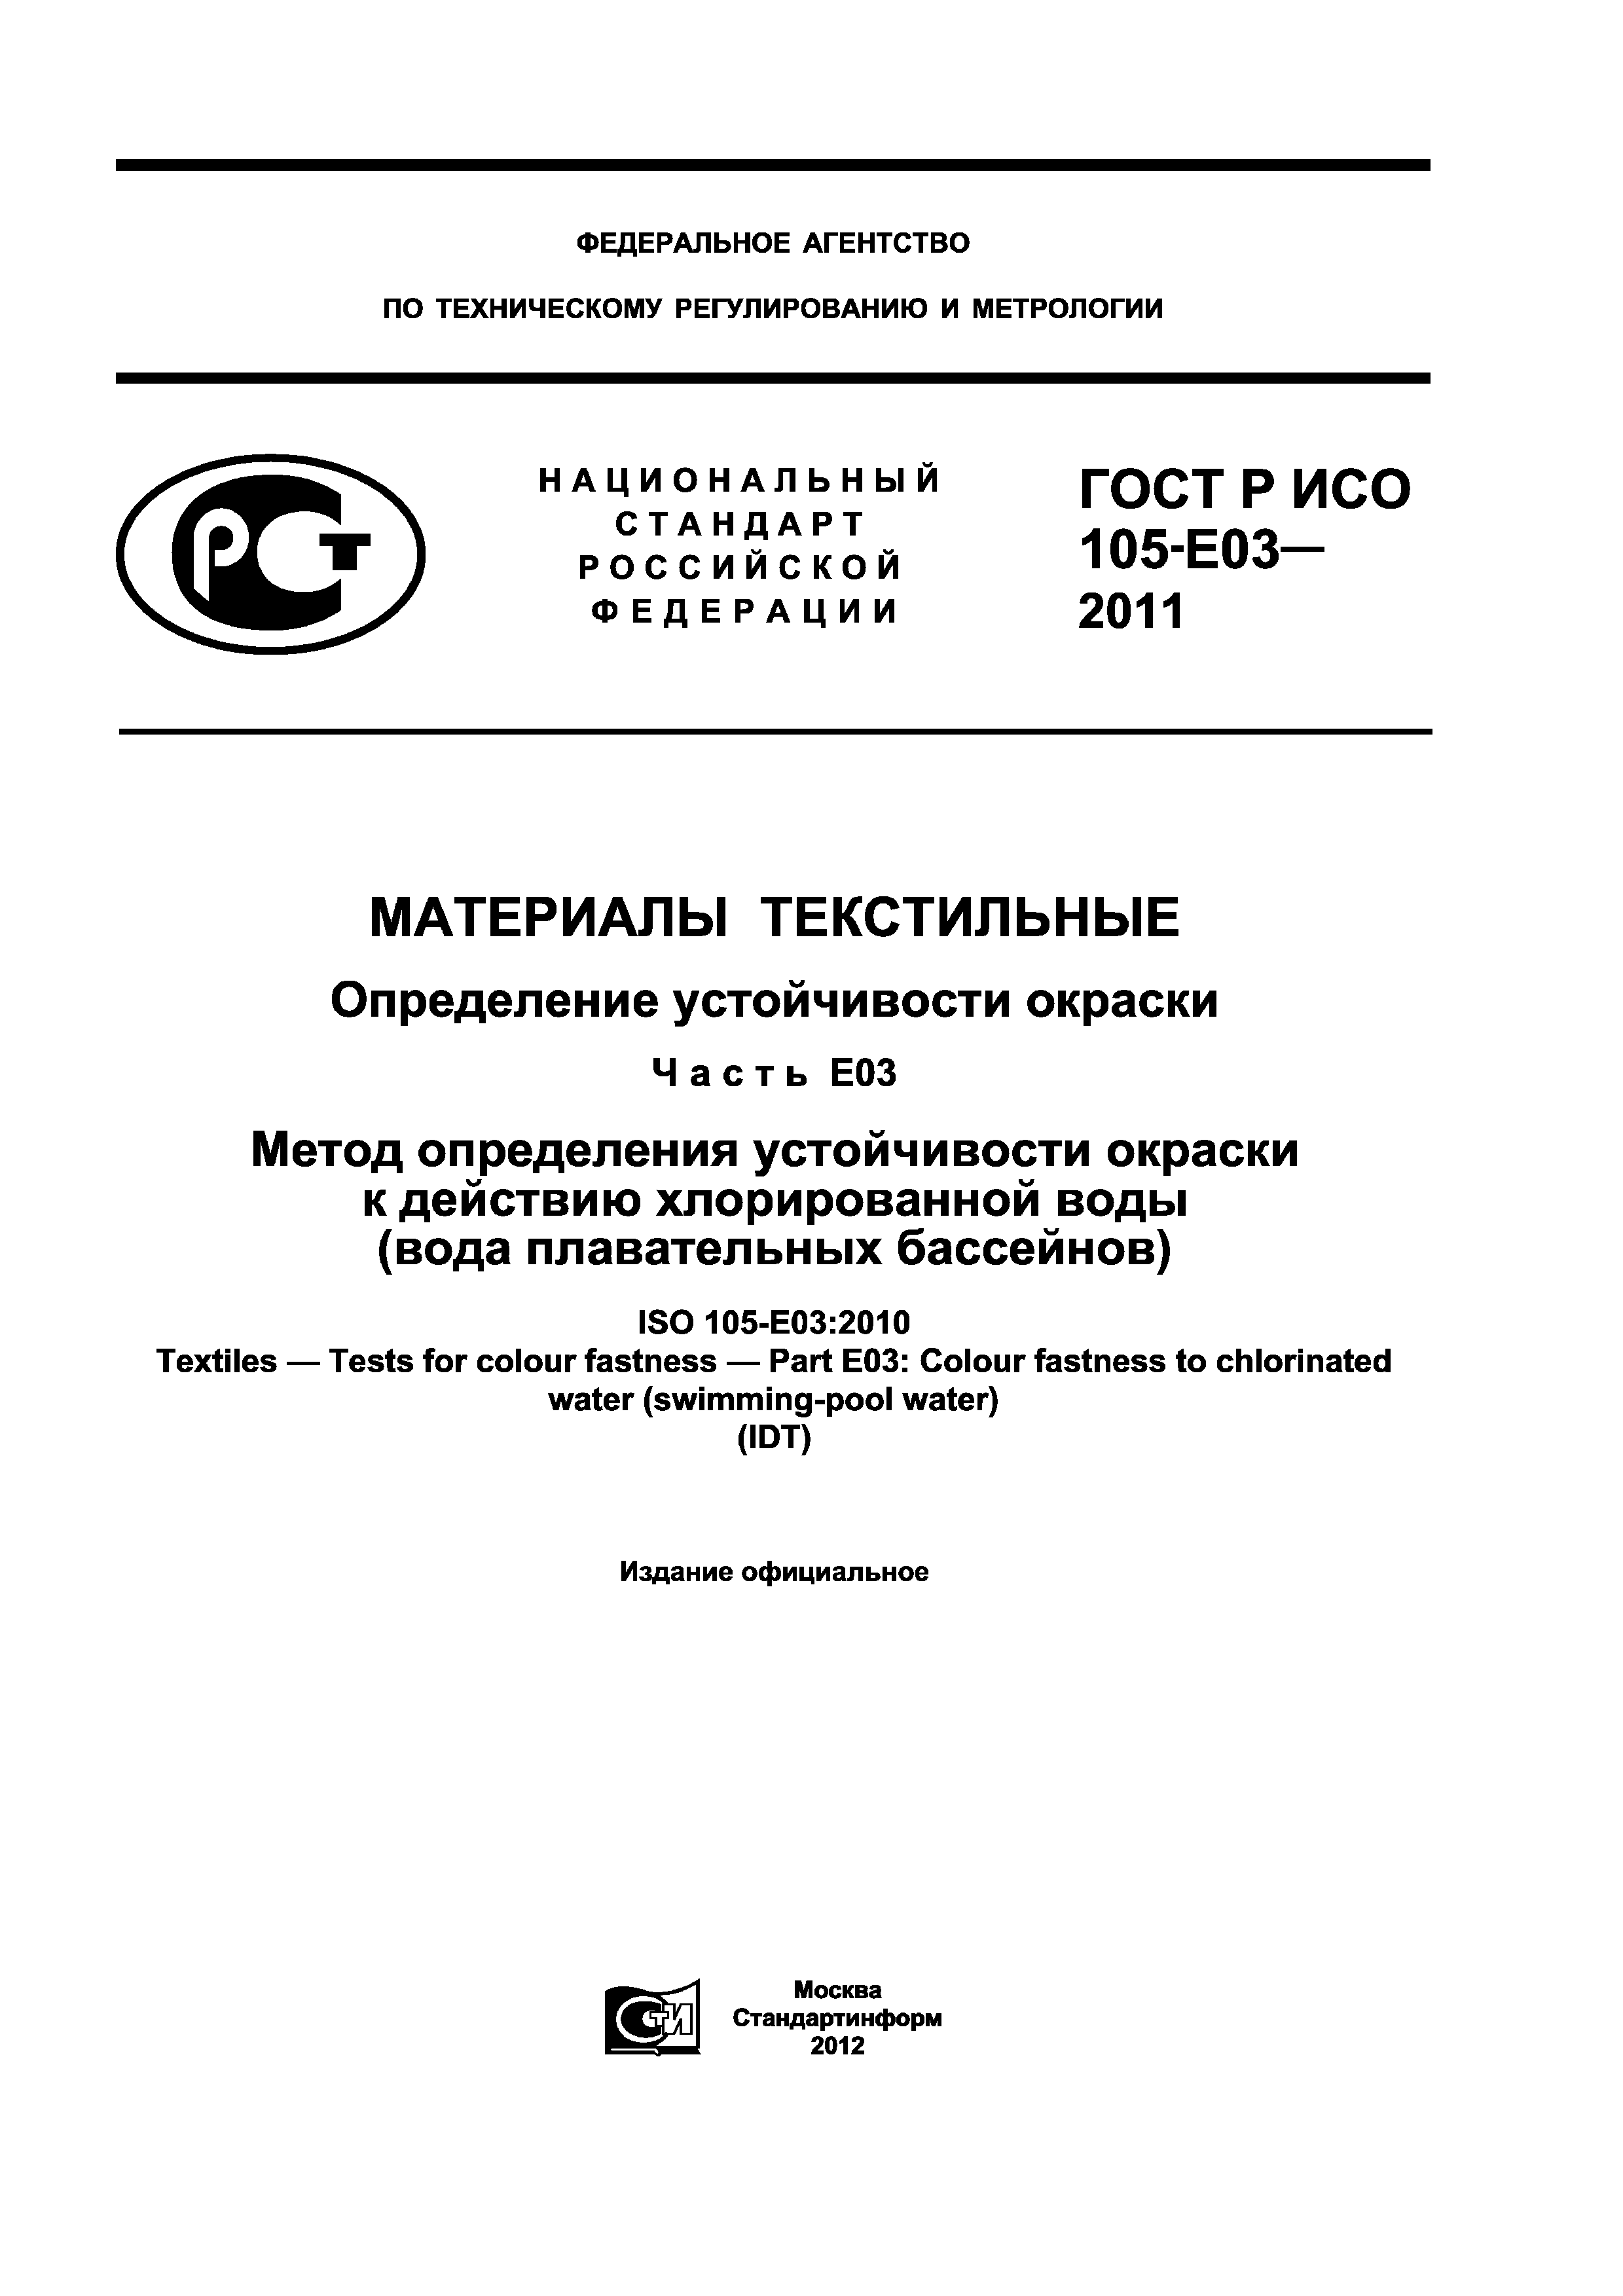 ГОСТ Р ИСО 105-E03-2011